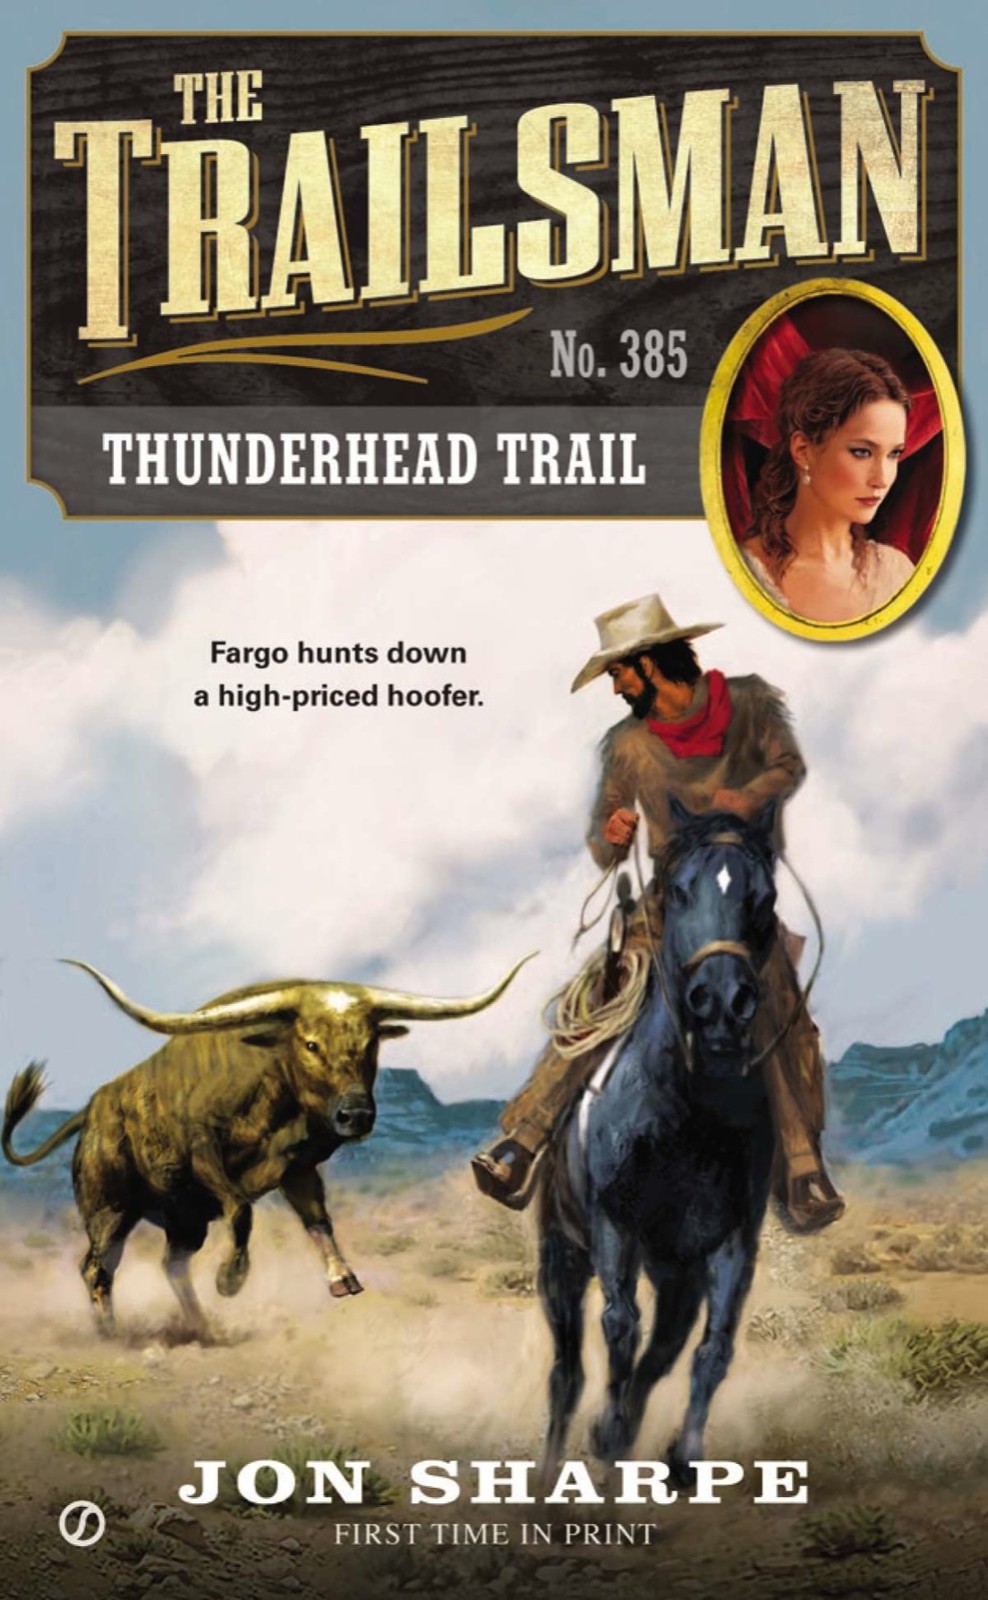 Thunderhead Trail by Jon Sharpe